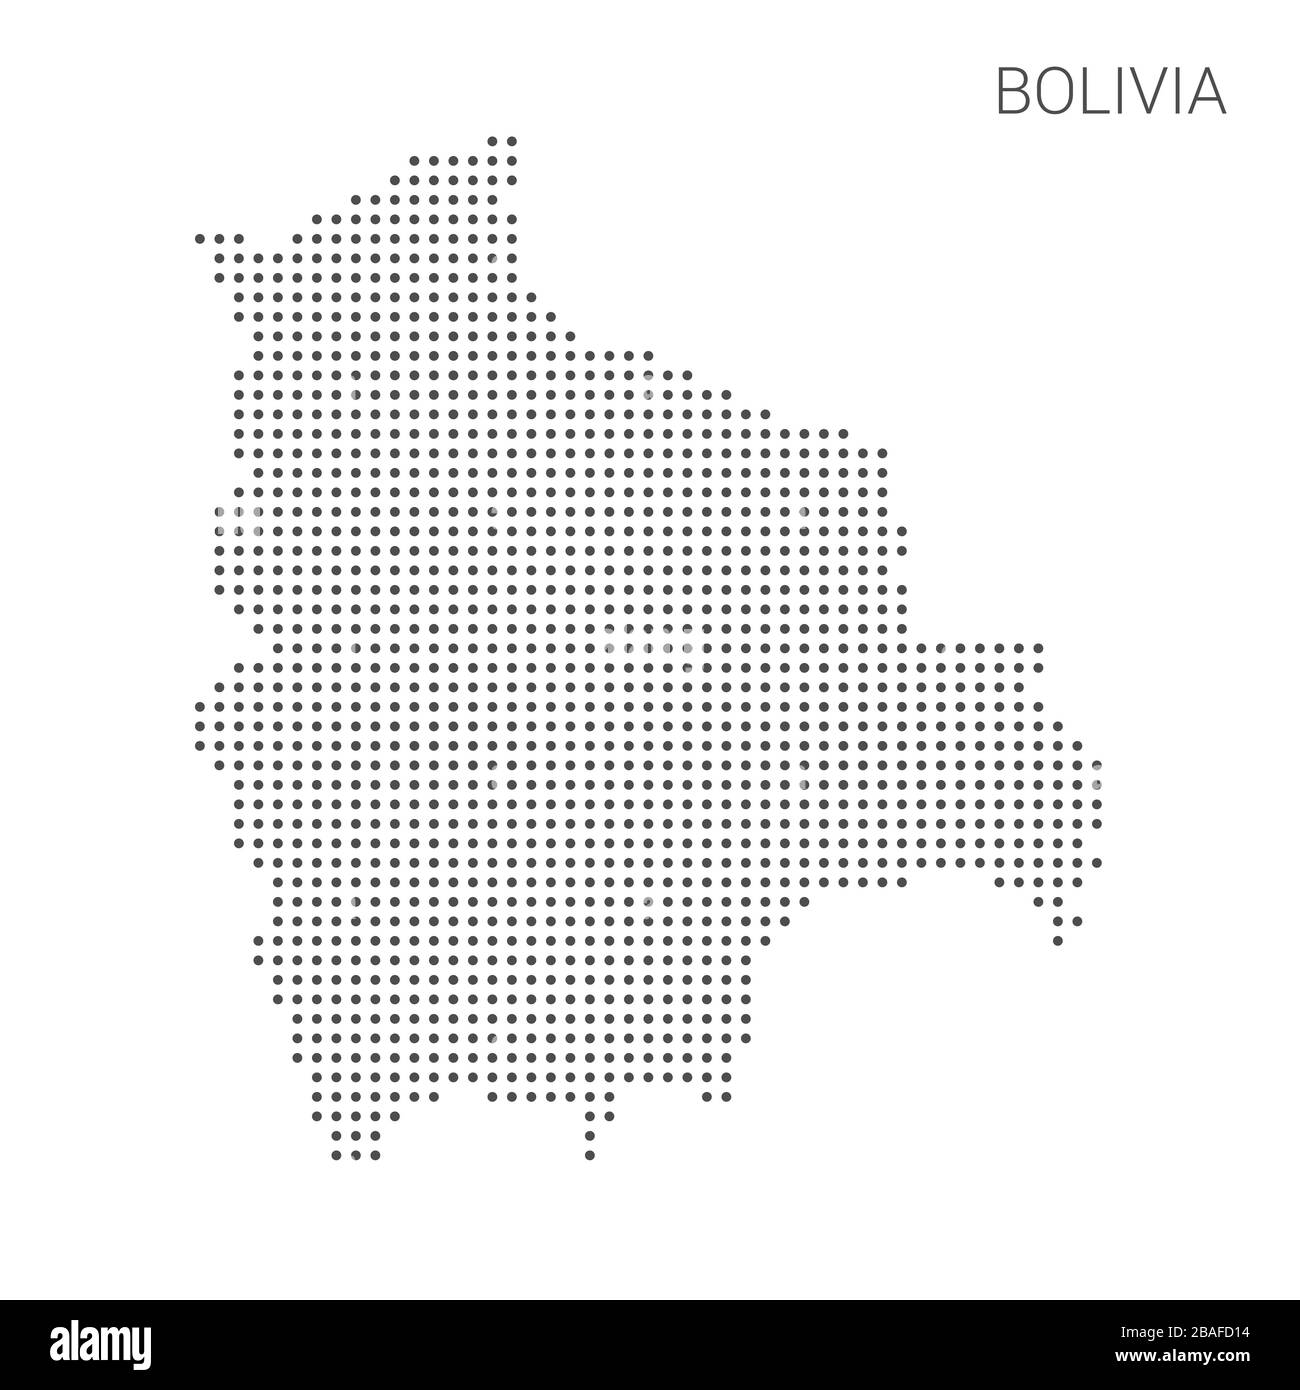 Carte bolivienne parsemée de vecteur de fond blanc isolé. Illustration de la conception technologique ou des infographies. Isolé sur fond blanc. Trajet vecto Illustration de Vecteur